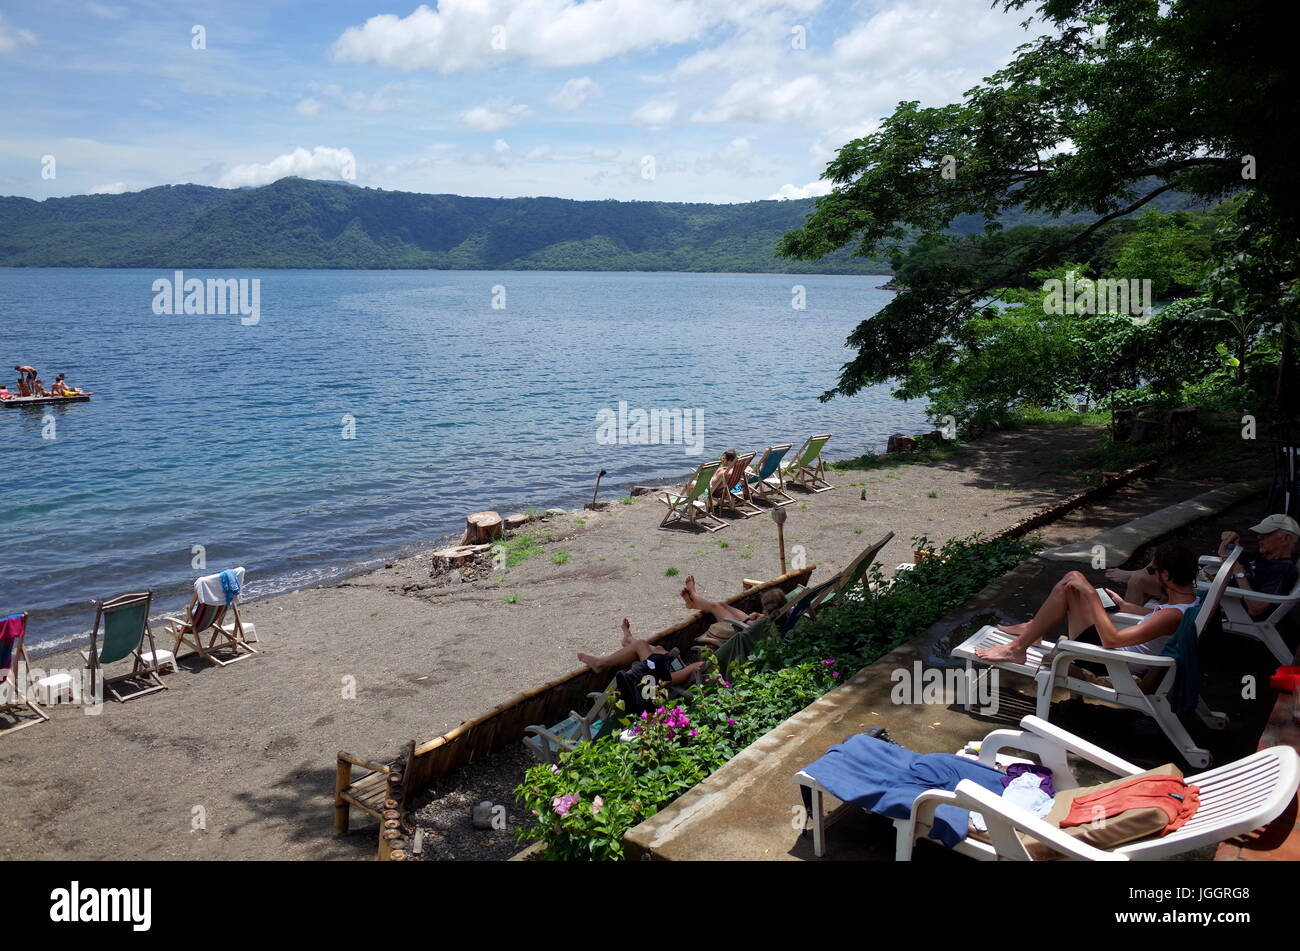 13settembre 2014, Granada, Nicaragua - turisti relax al Largo de Apoyo, un cratere vulcanico lago vicino a Granada per i momenti di relax e sport acquatici Foto Stock